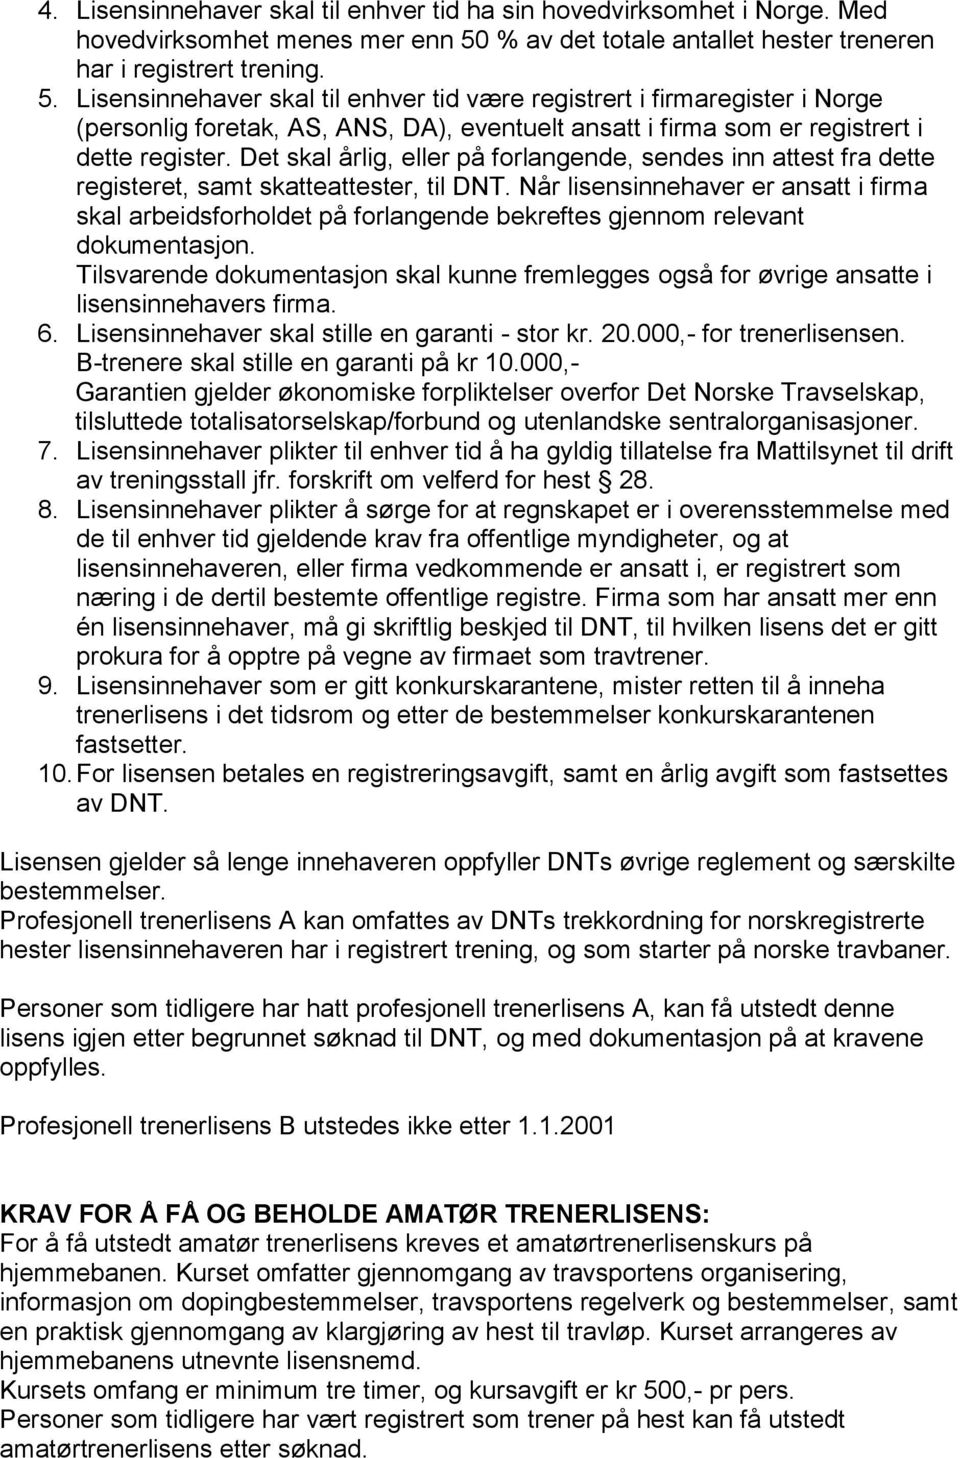 Lisensinnehaver skal til enhver tid være registrert i firmaregister i Norge (personlig foretak, AS, ANS, DA), eventuelt ansatt i firma som er registrert i dette register.